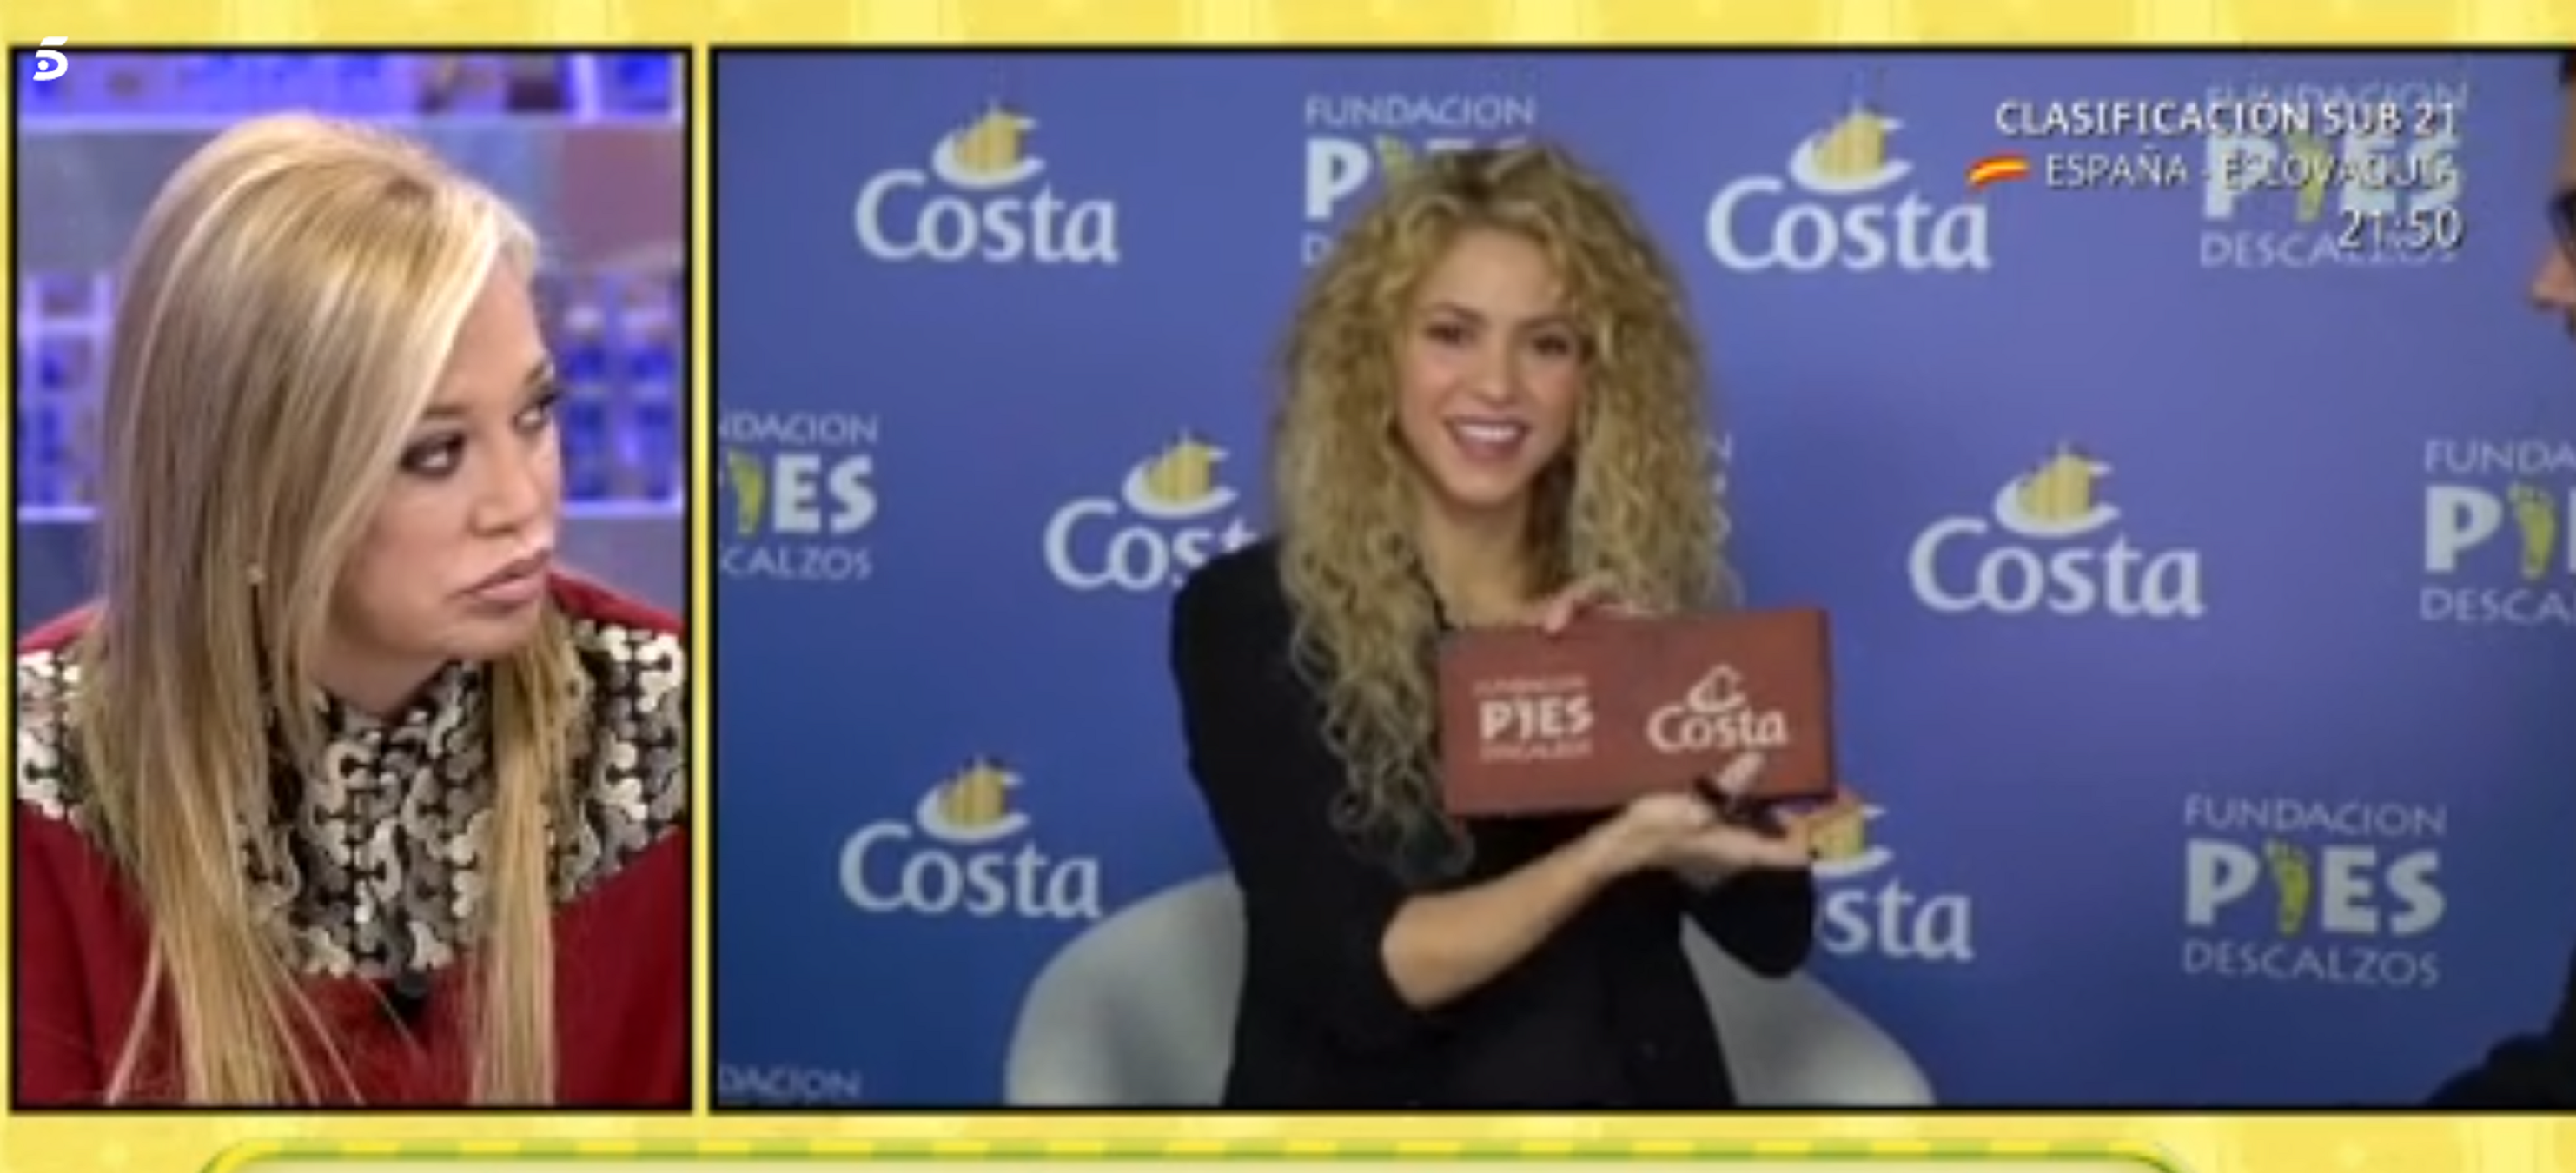 Shakira, indignada: "¿Quién es Belén Esteban?"